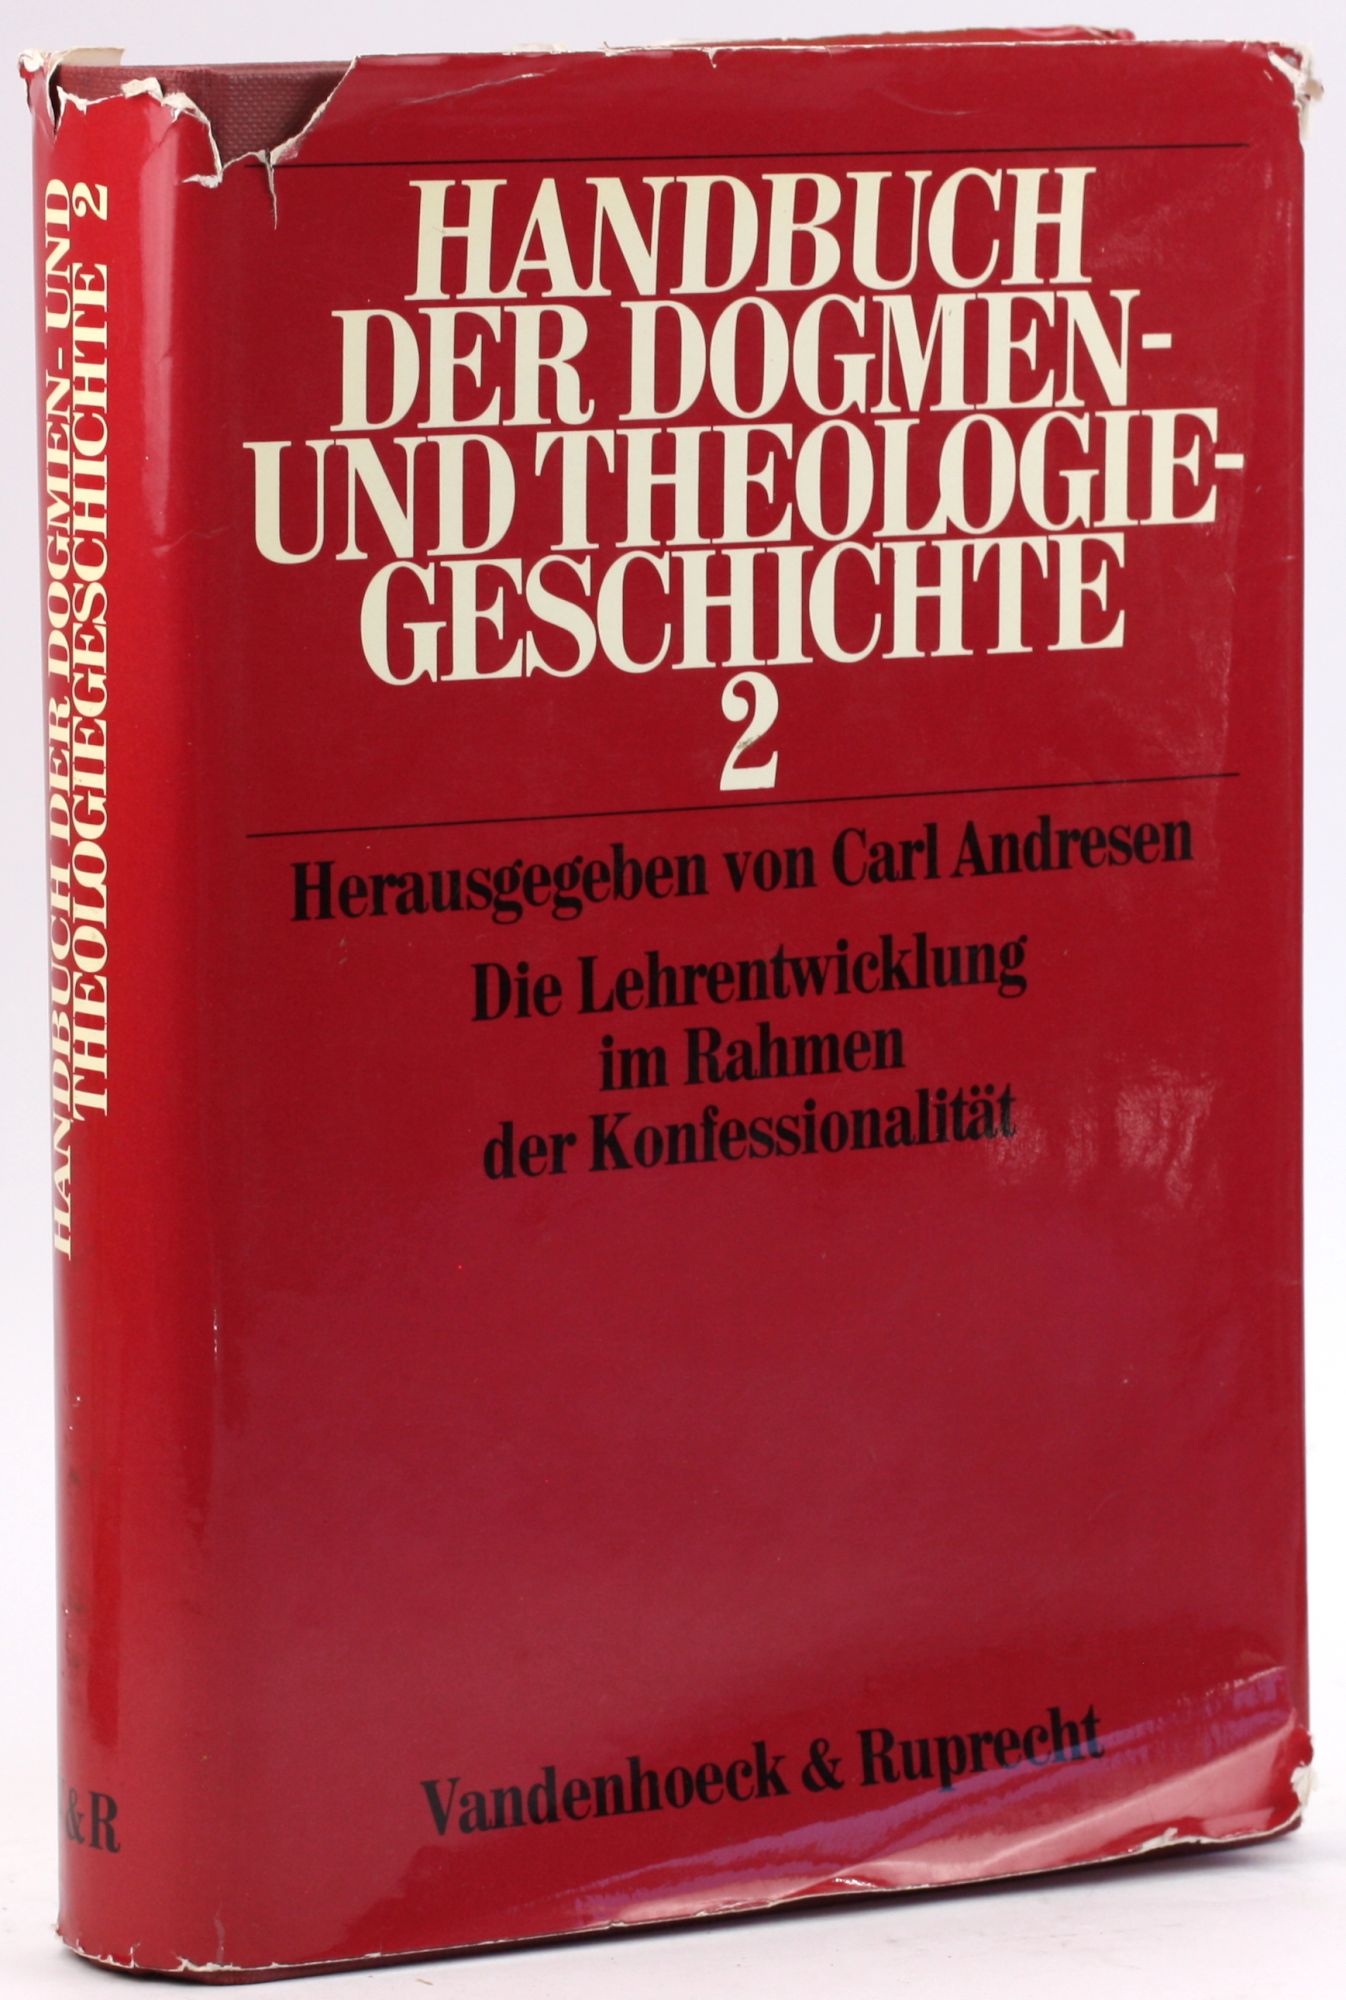 Handbuch der Dogmen- und Theologiegeschichte (German Edition) [Handbuch der Dogmen- und Theologiegeschichte, Band 2] - Unknown Author